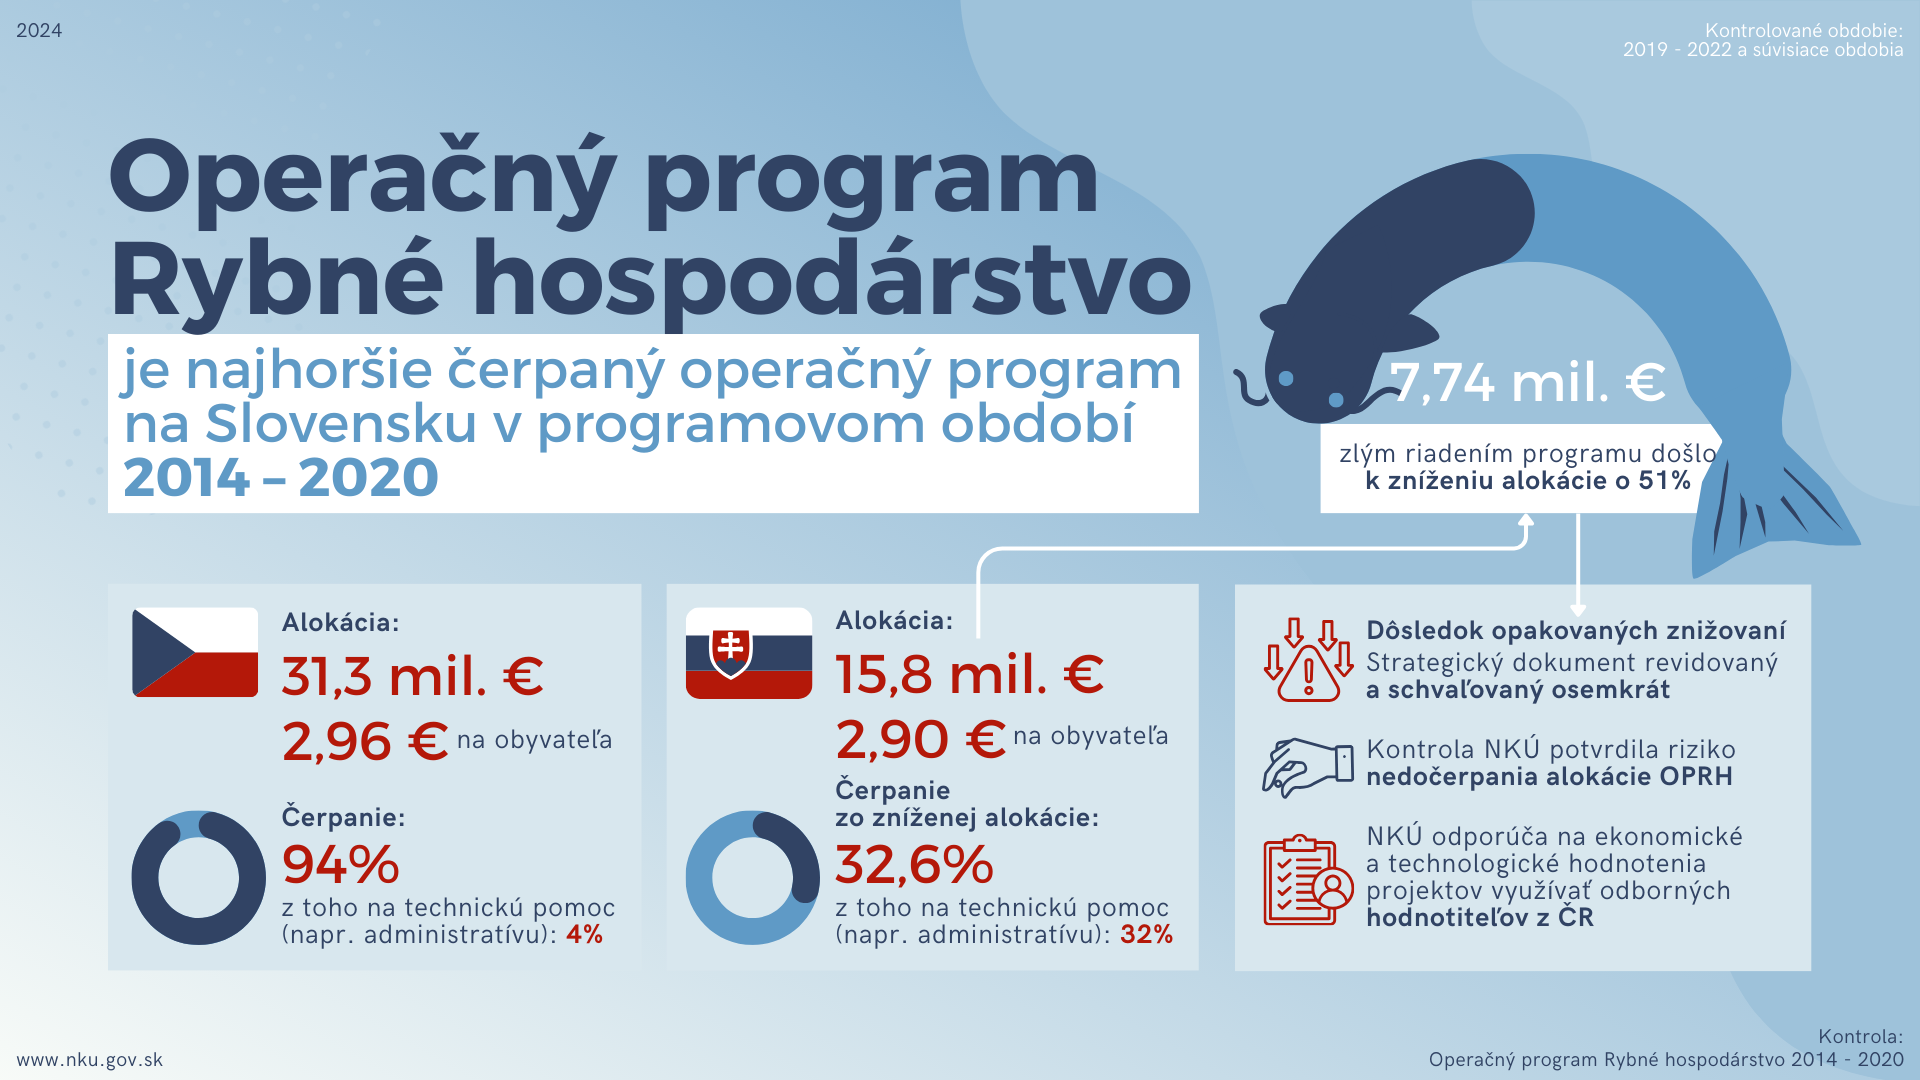 Infografika: Kontrola: Operačný program Rybné hospodárstvo 2014 – 2020; Kontrolované obdobie: 2019 - 2022 a súvisiace obdobia; Operačný program Rybné hospodárstvo je najhoršie čerpaný operačný program na Slovensku v programovom období 2014 – 2020; Alokácia: 31,3 mil. €; 2,96 € na obyvateľa; Čerpanie: 94 % z toho na technickú pomoc (napr. administratívu): 4 %; Alokácia: 15,8 mil. €; 2,90 €na obyvateľa; Čerpanie zo zníženej alokácie: 32,6 % z toho na technickú pomoc (napr. administratívu): 32 %; 7,74 mil. € zlým riadením programu došlo k zníženiu alokácie o 51 %; Dôsledok opakovaných znižovaní: Strategický dokument revidovaný a schvaľovaný osemkrát; Kontrola NKÚ potvrdila riziko nedočerpania alokácie OPRH; NKÚ odporúča na ekonomické a technologické hodnotenia projektov využívať odborných hodnotiteľov z ČR.